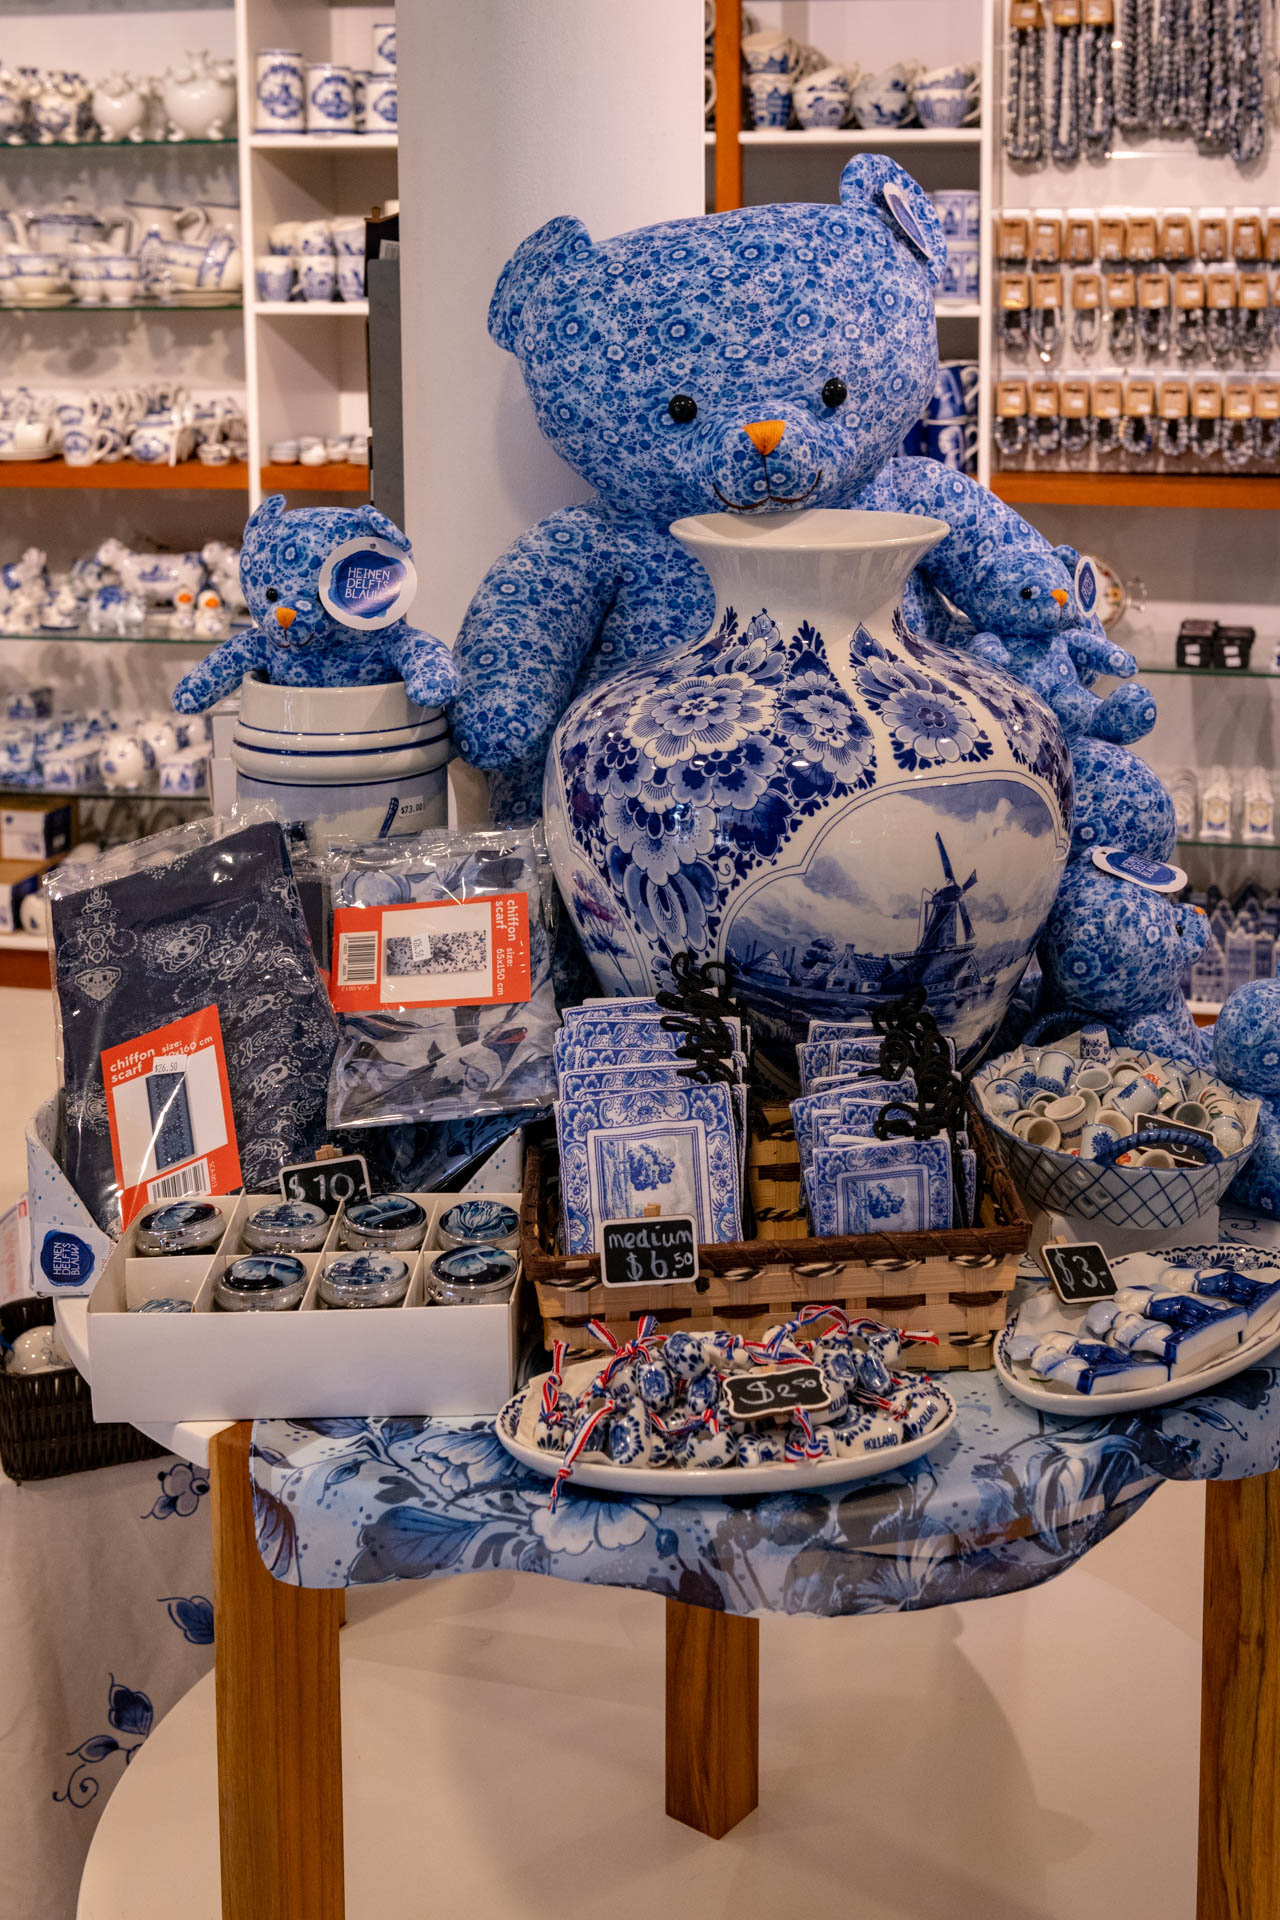 Delft Blue Shop in Otrobanda, Willemstad